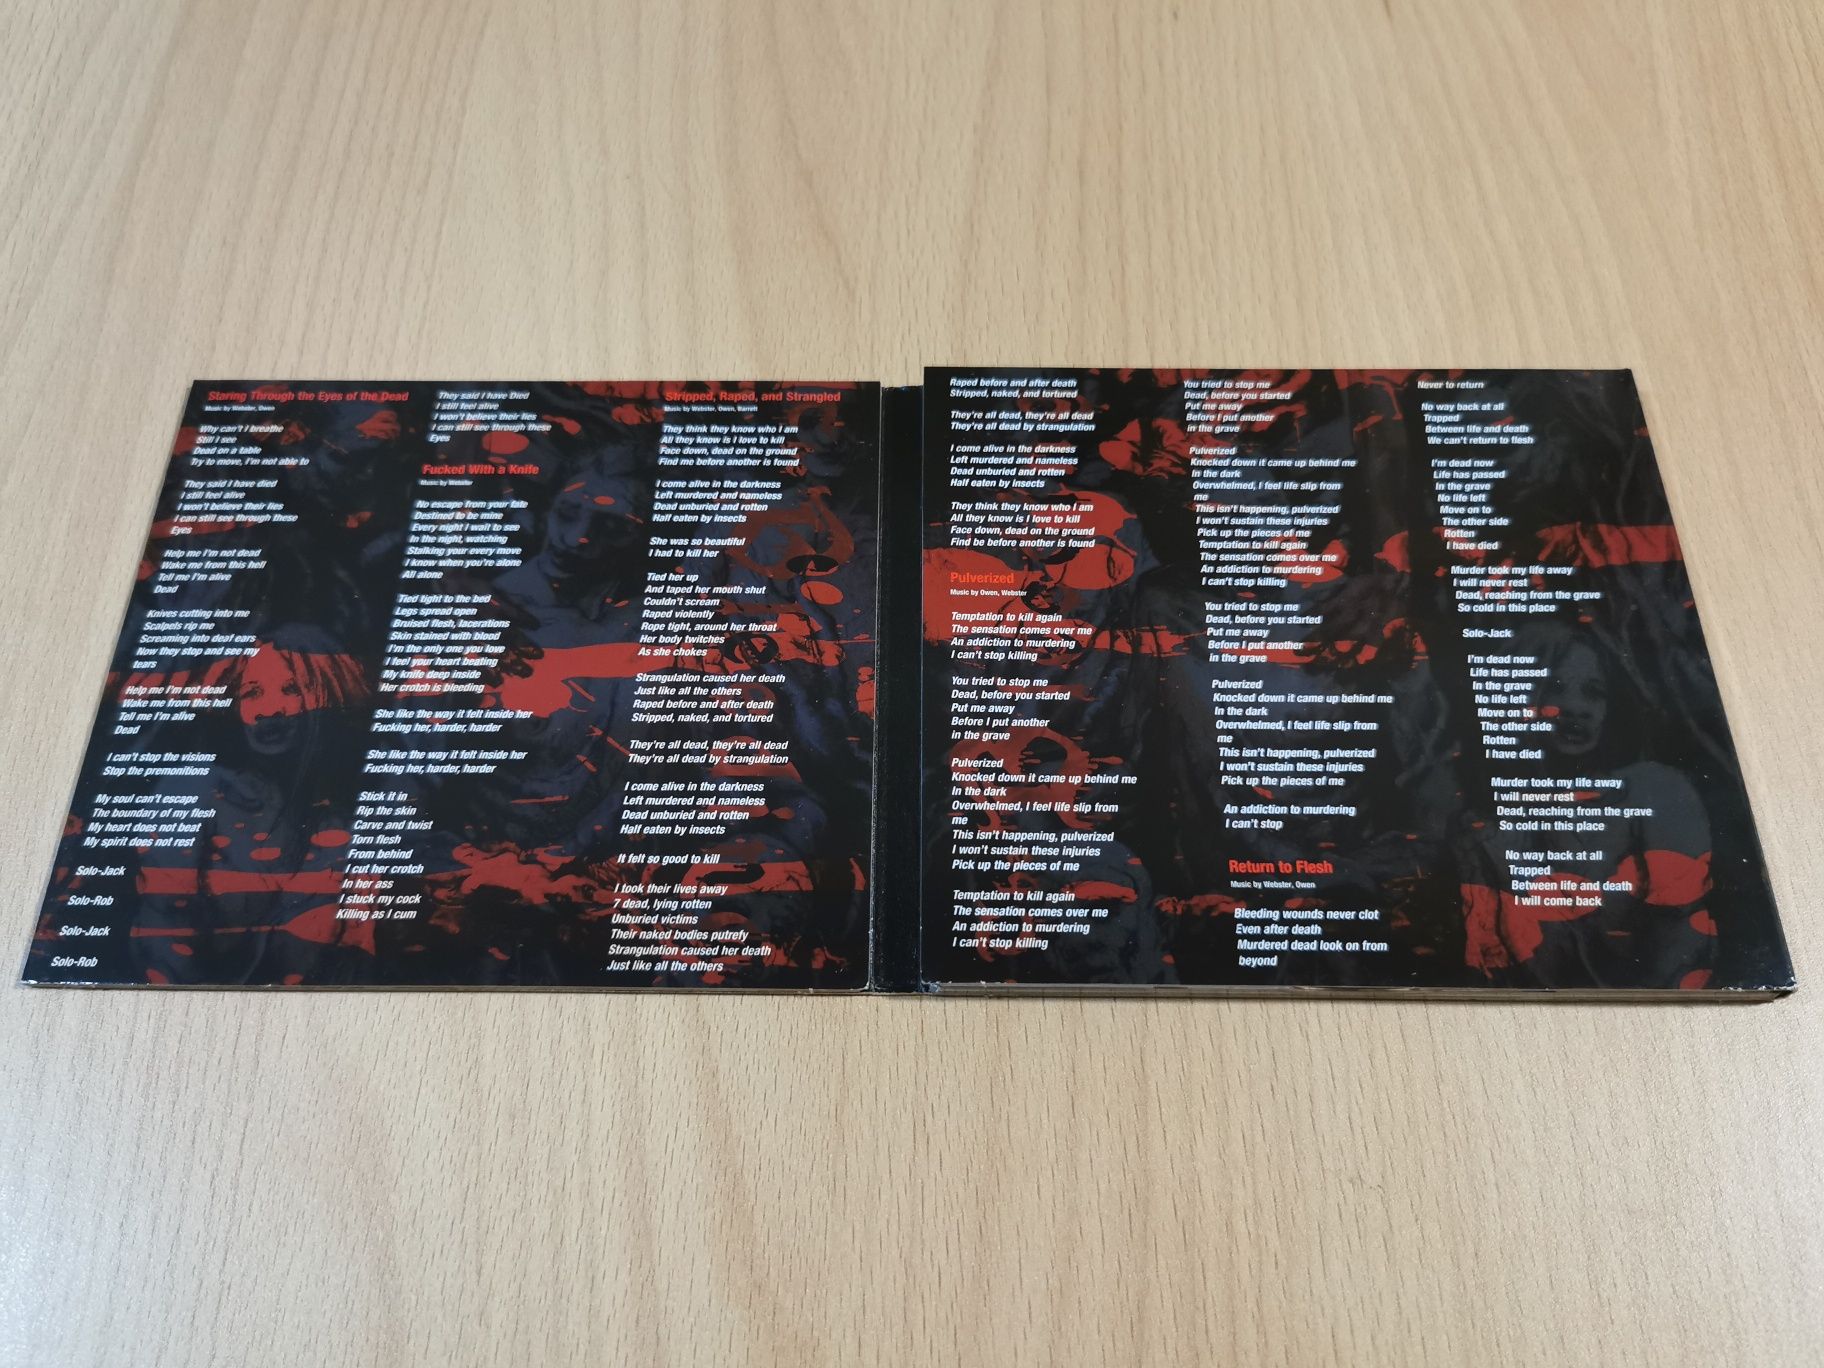 Vendo CD Cannibal Corpse em excelente estado